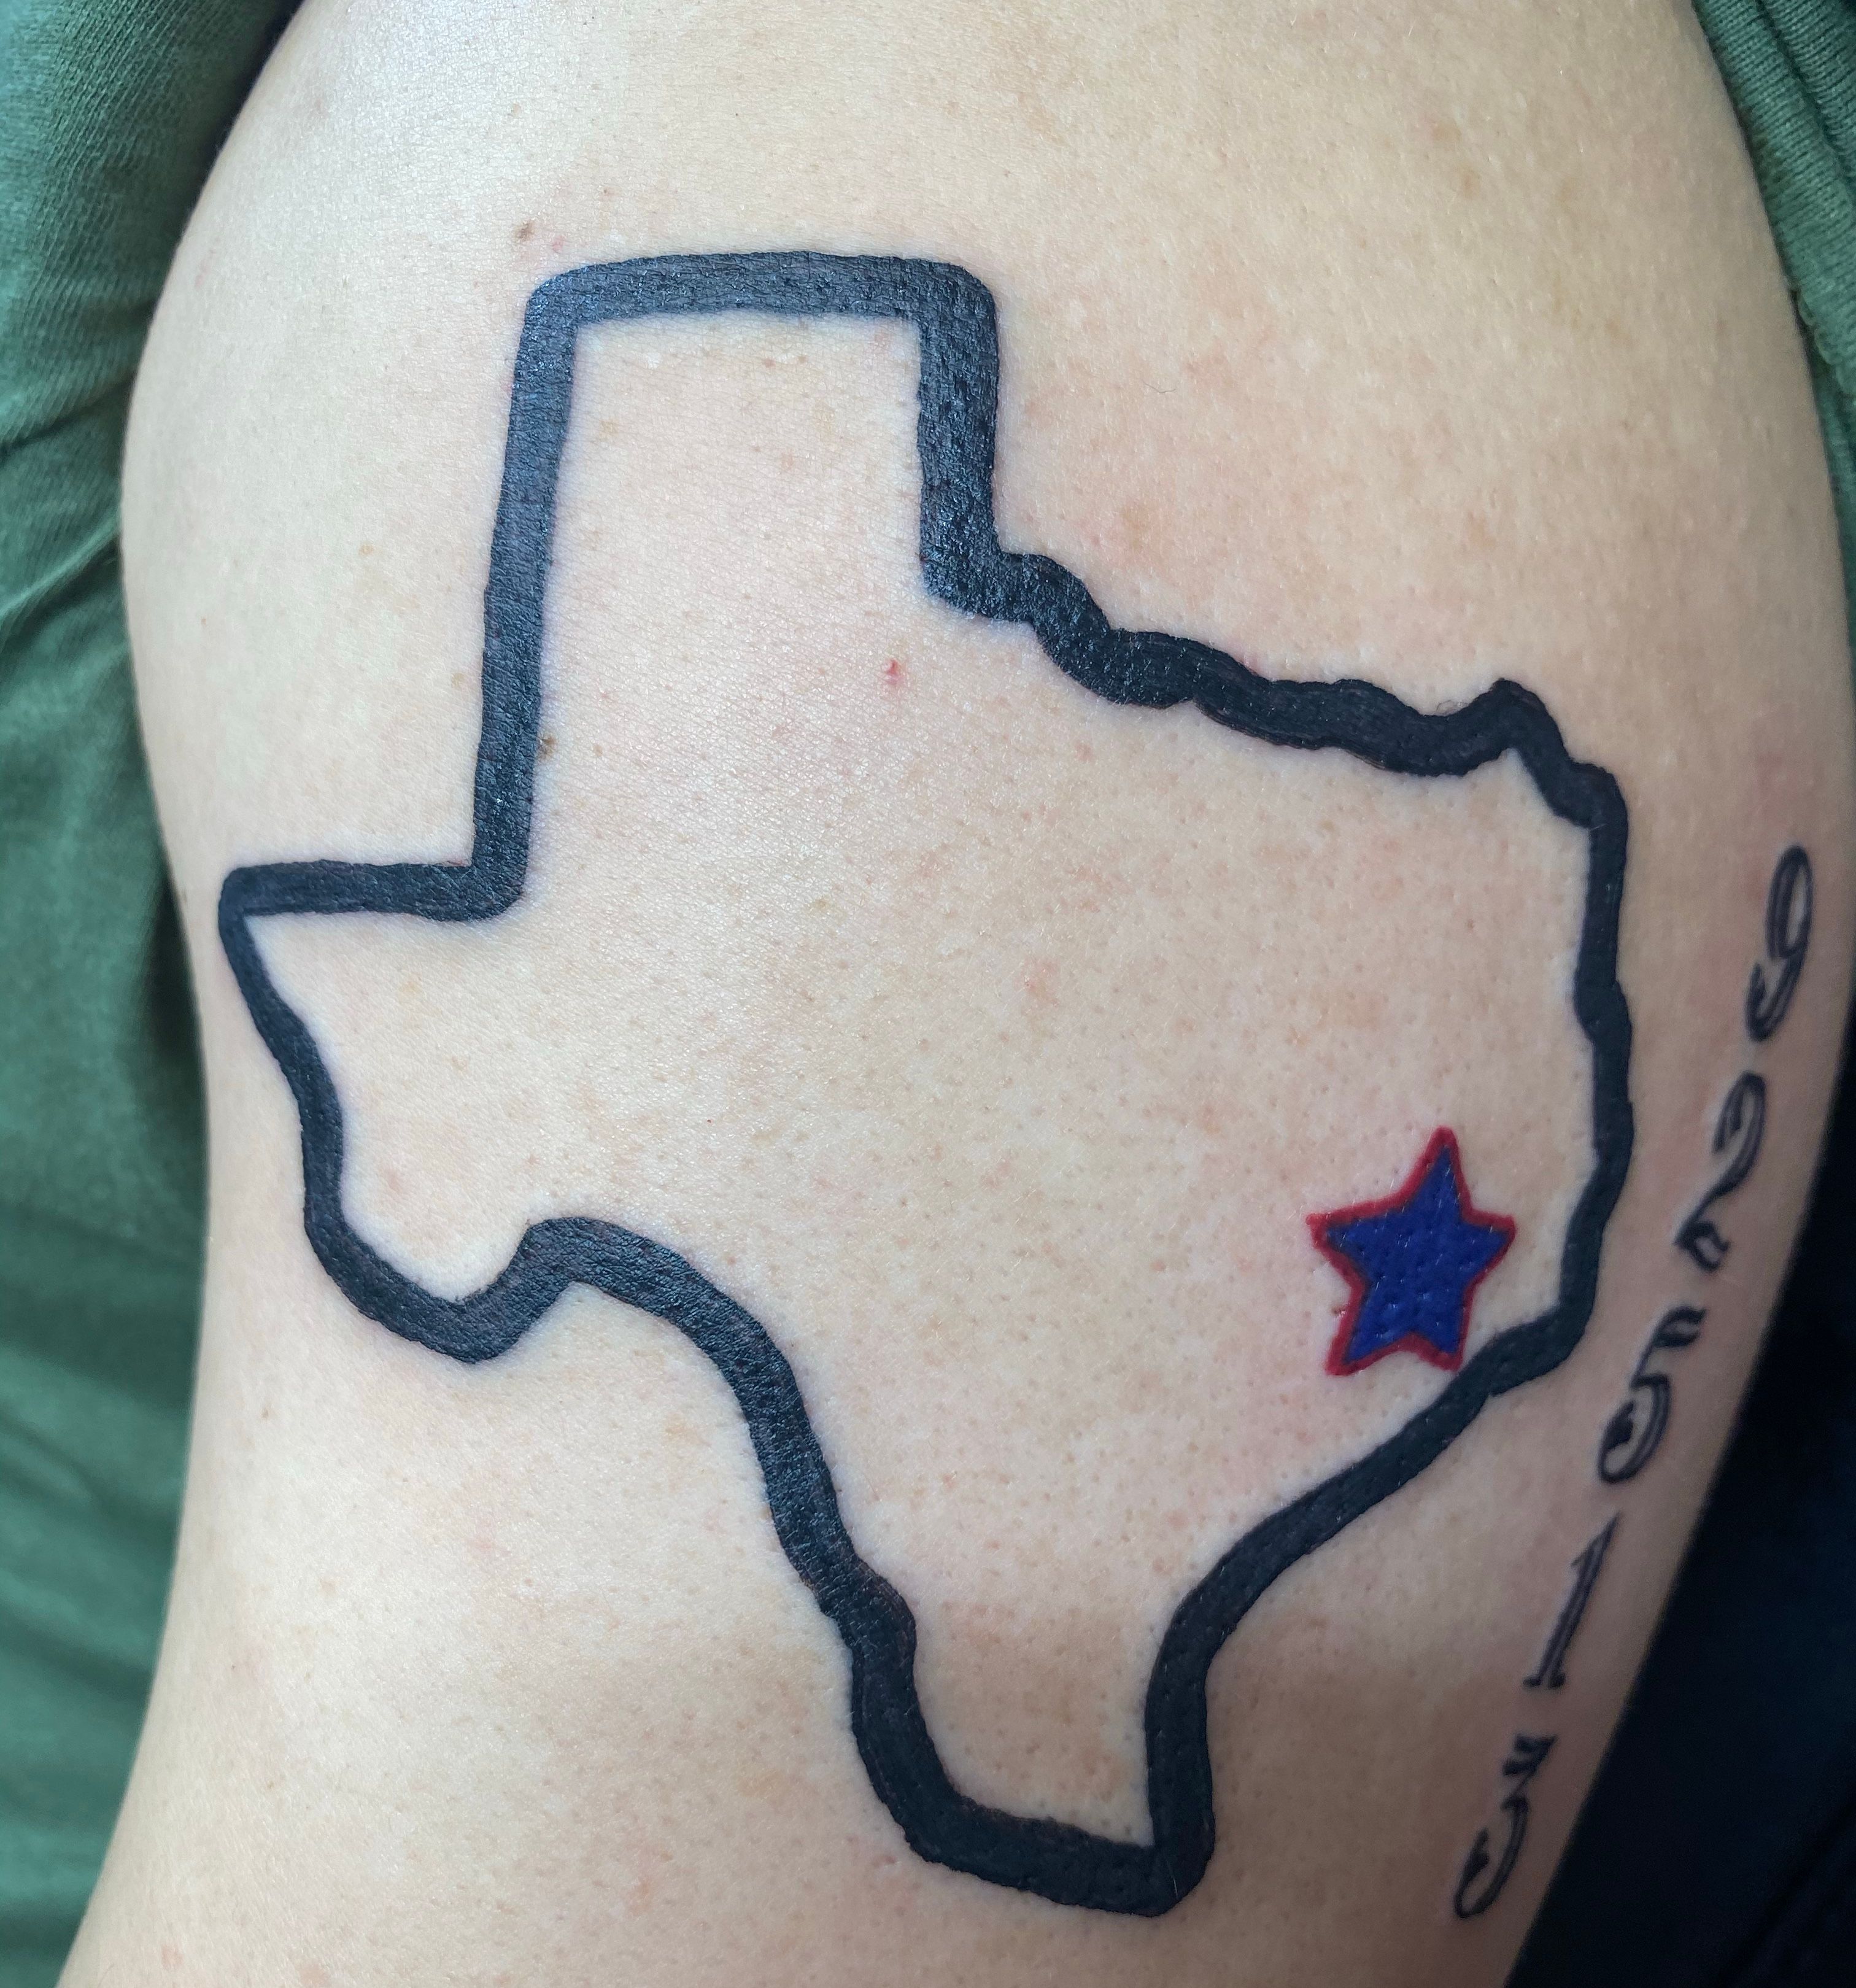 Tattoos that take Houston pride to the next level